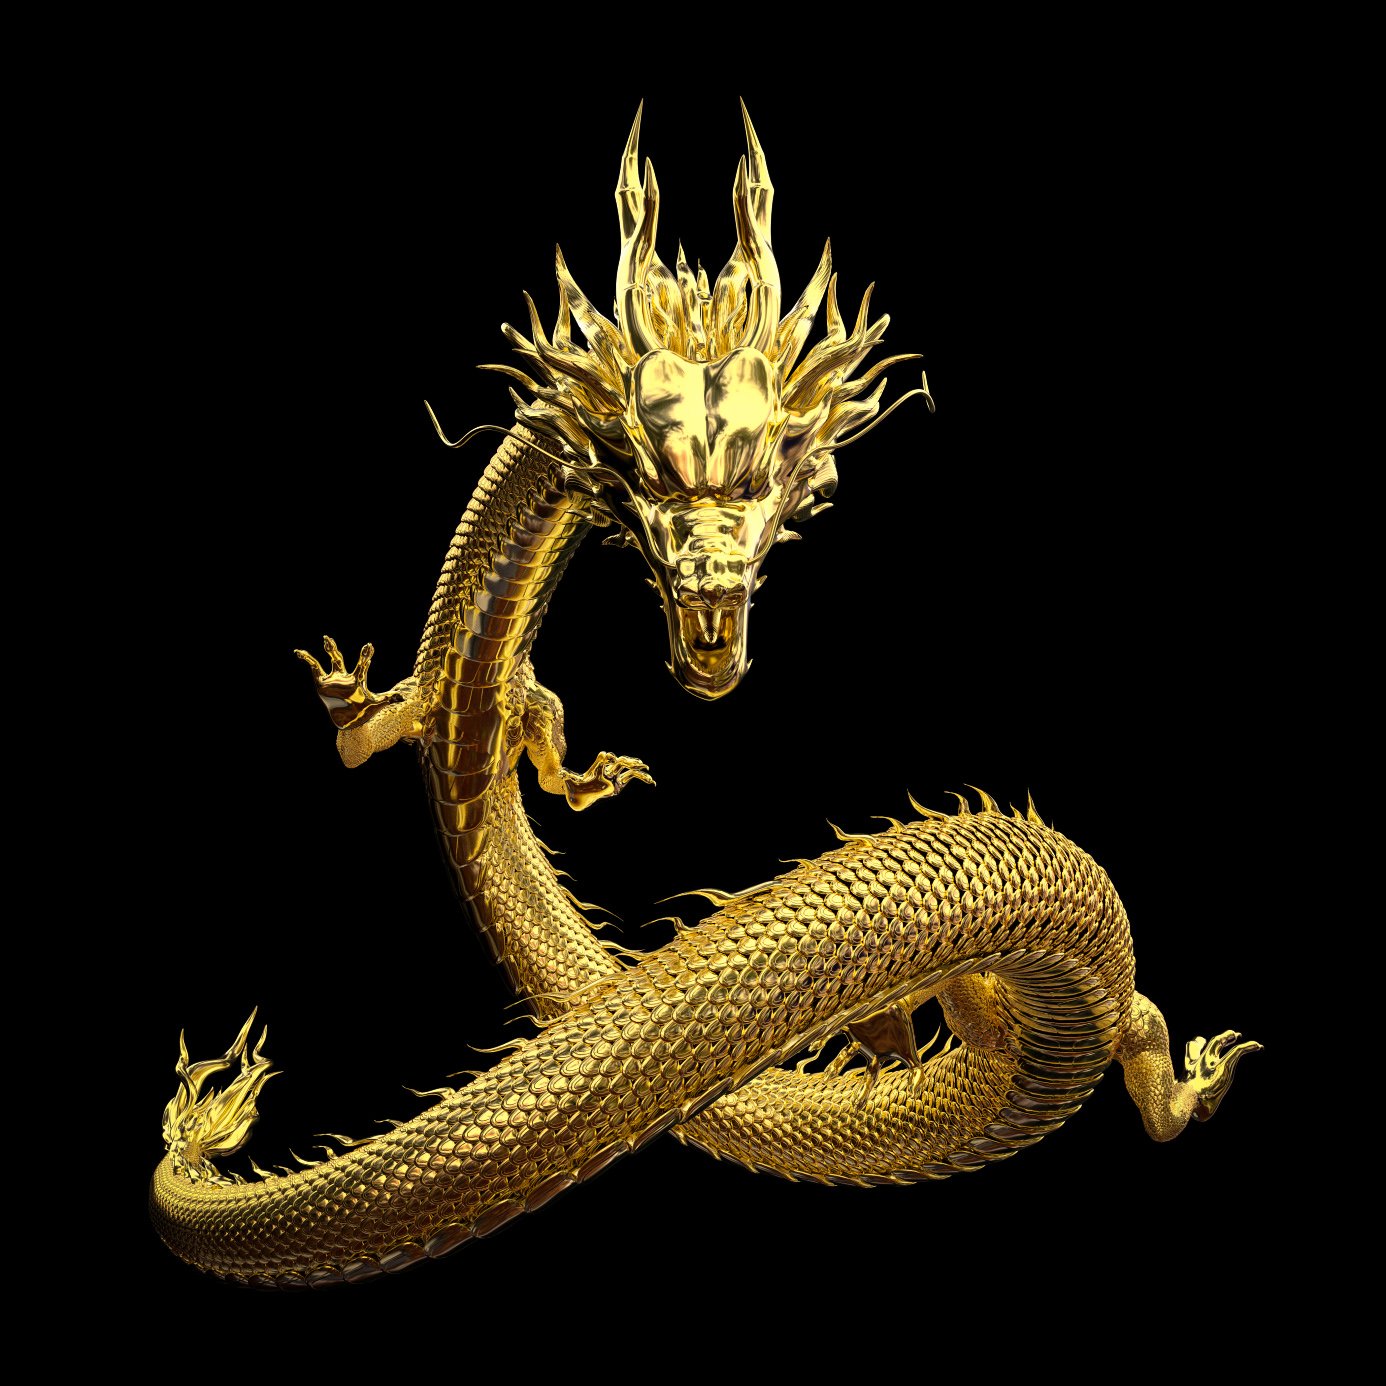 Китайский дракон, также известный как лунг, является легендарным существом в китайской мифологии.